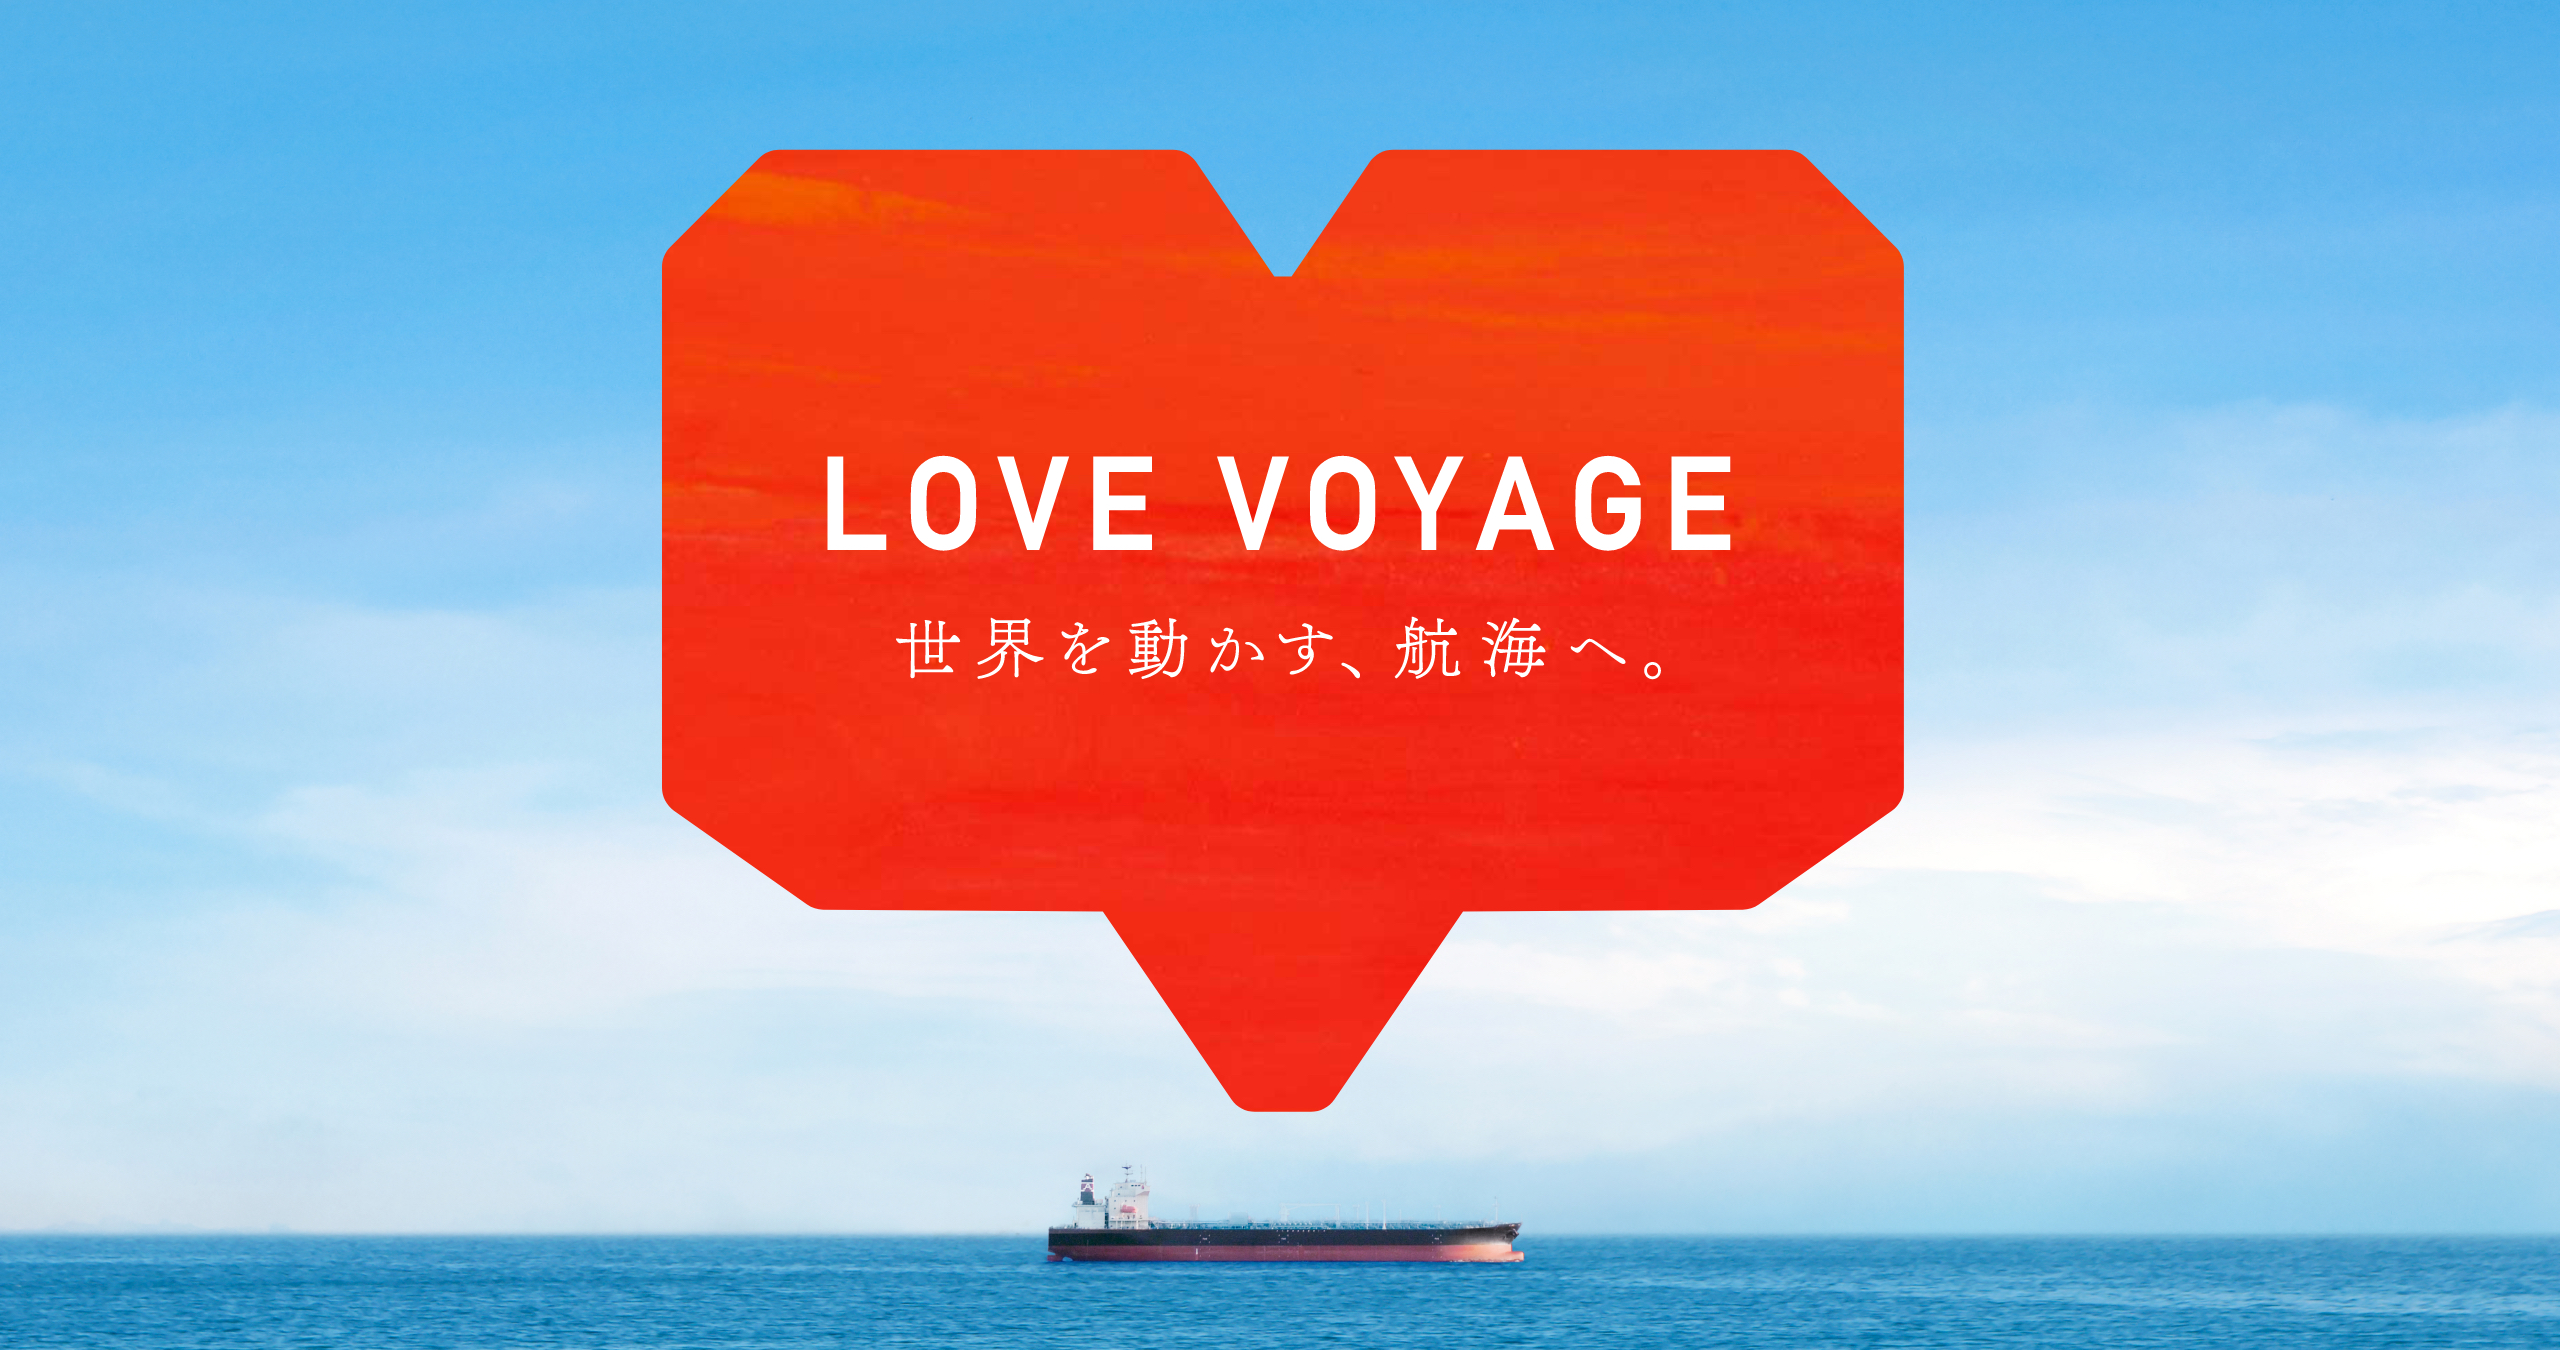 LOVE VOYAGE 世界を動かす、航海へ。